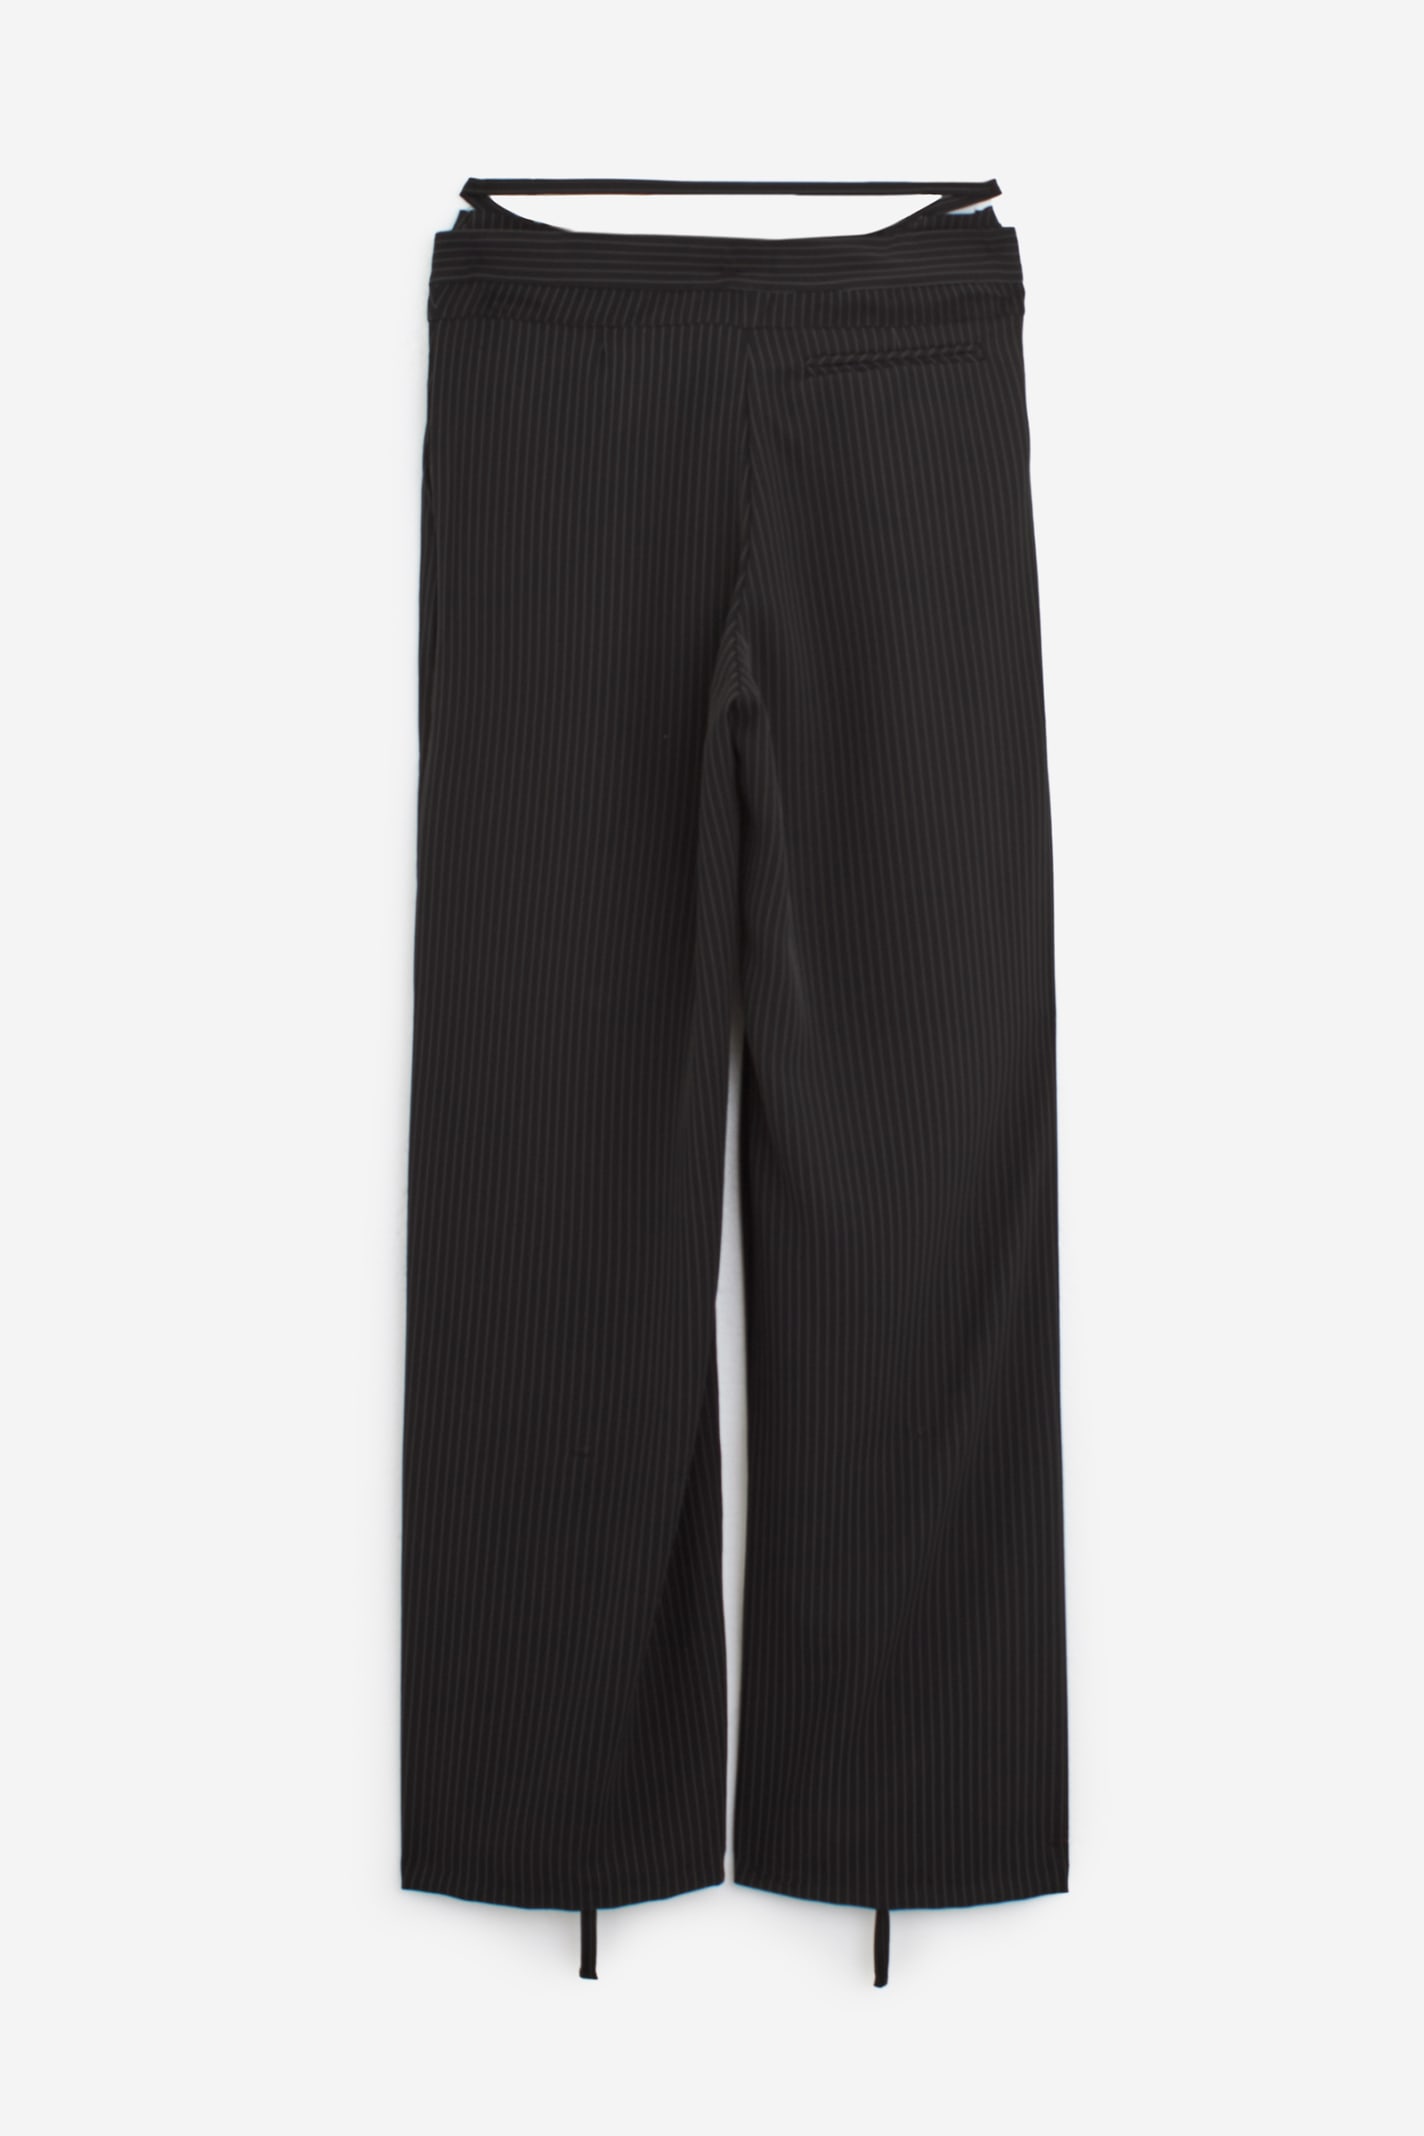 Shop Ottolinger Double Fold Suit Pants In Black